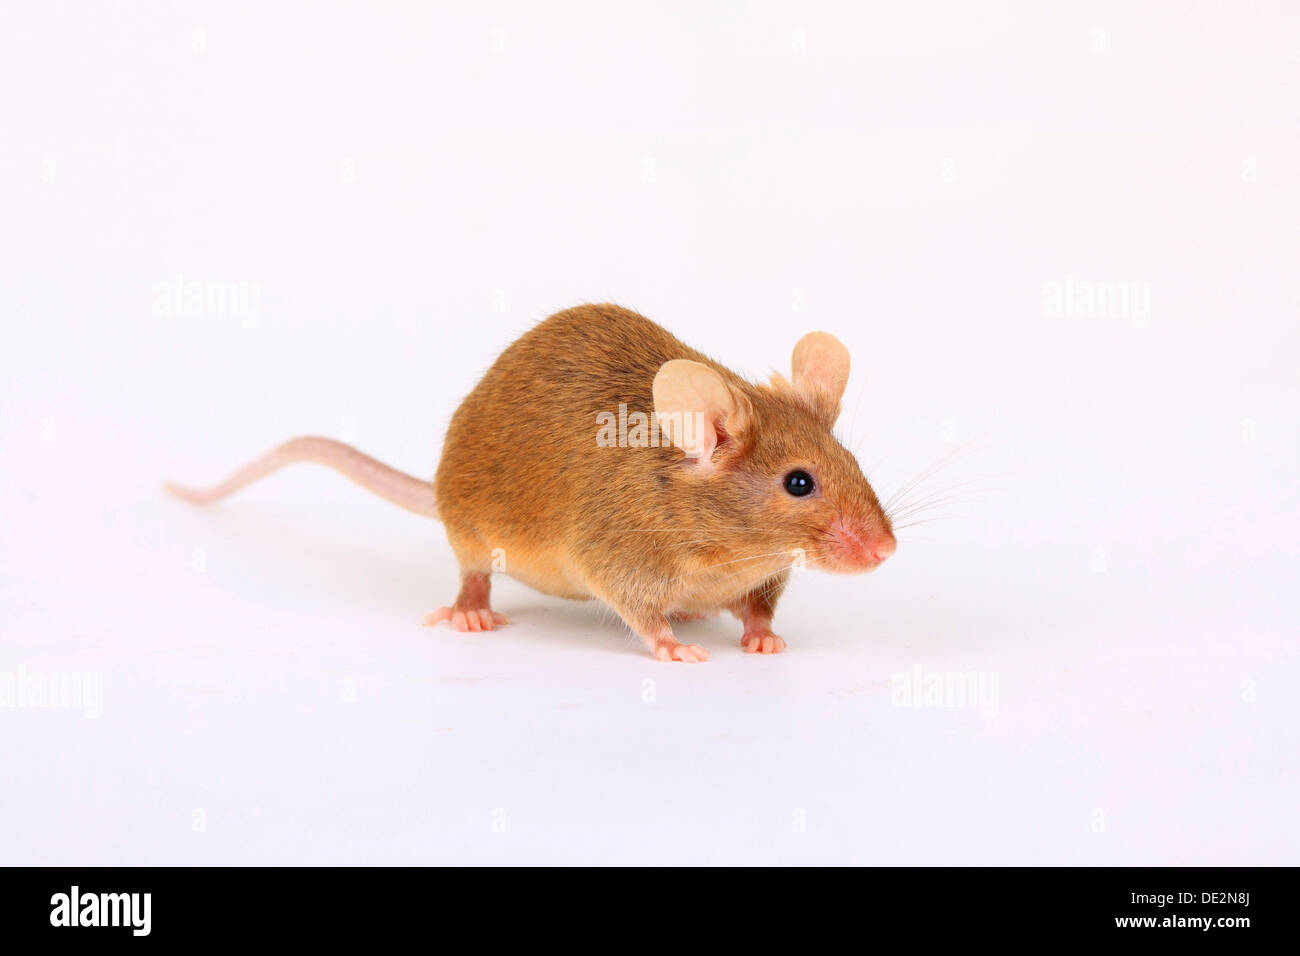 Souris fantaisie, une forme domestiquée de la souris domestique (Mus musculus) Banque D'Images